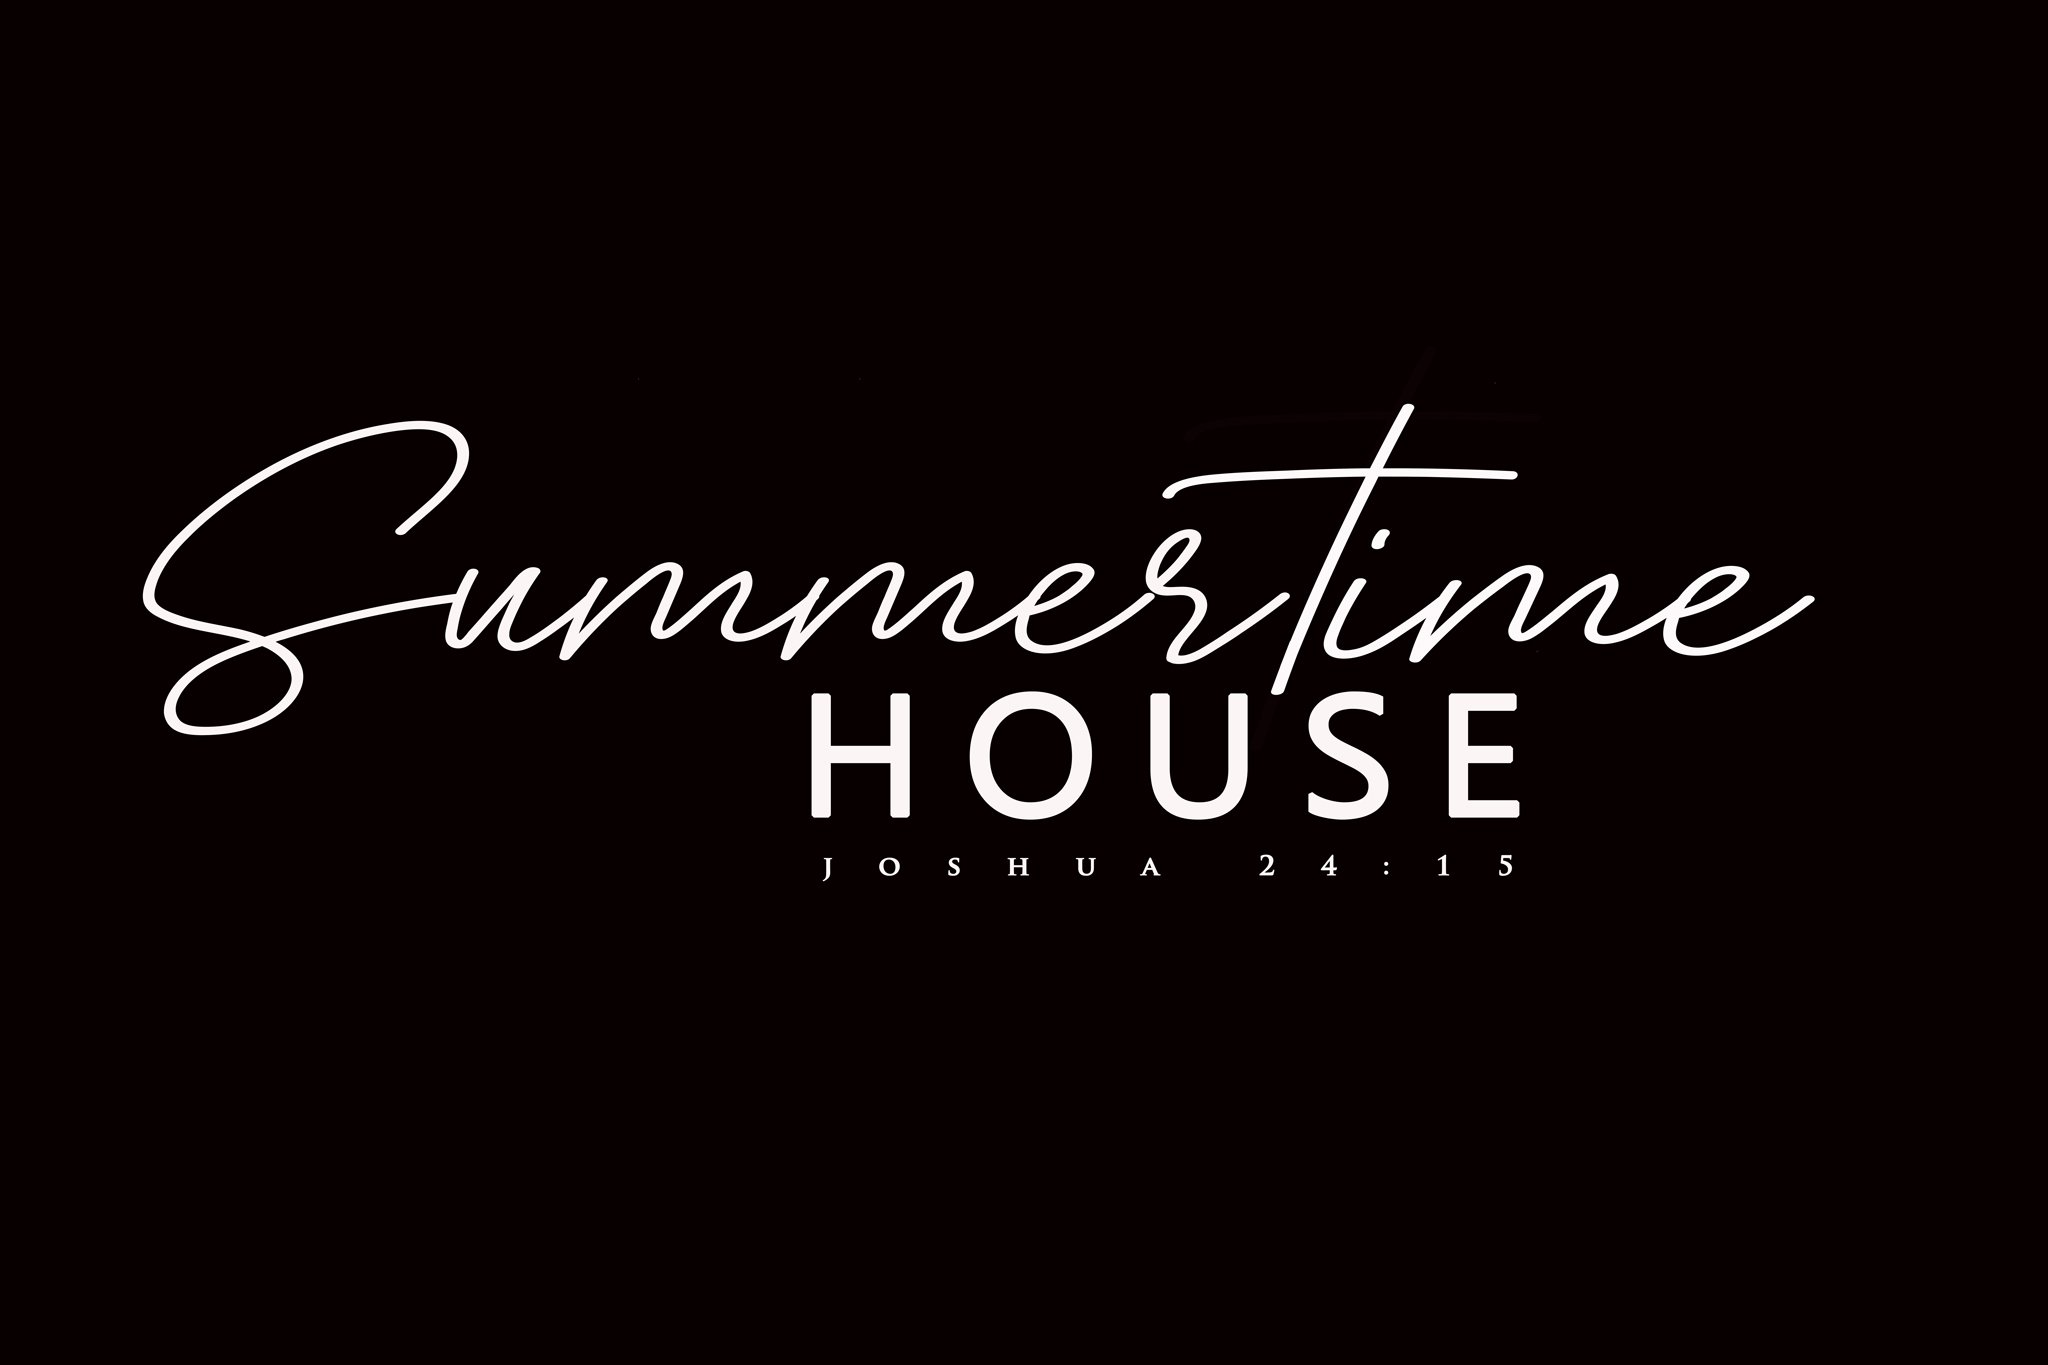 Web-Summertime-House-Logo-Black-Background-.jpg